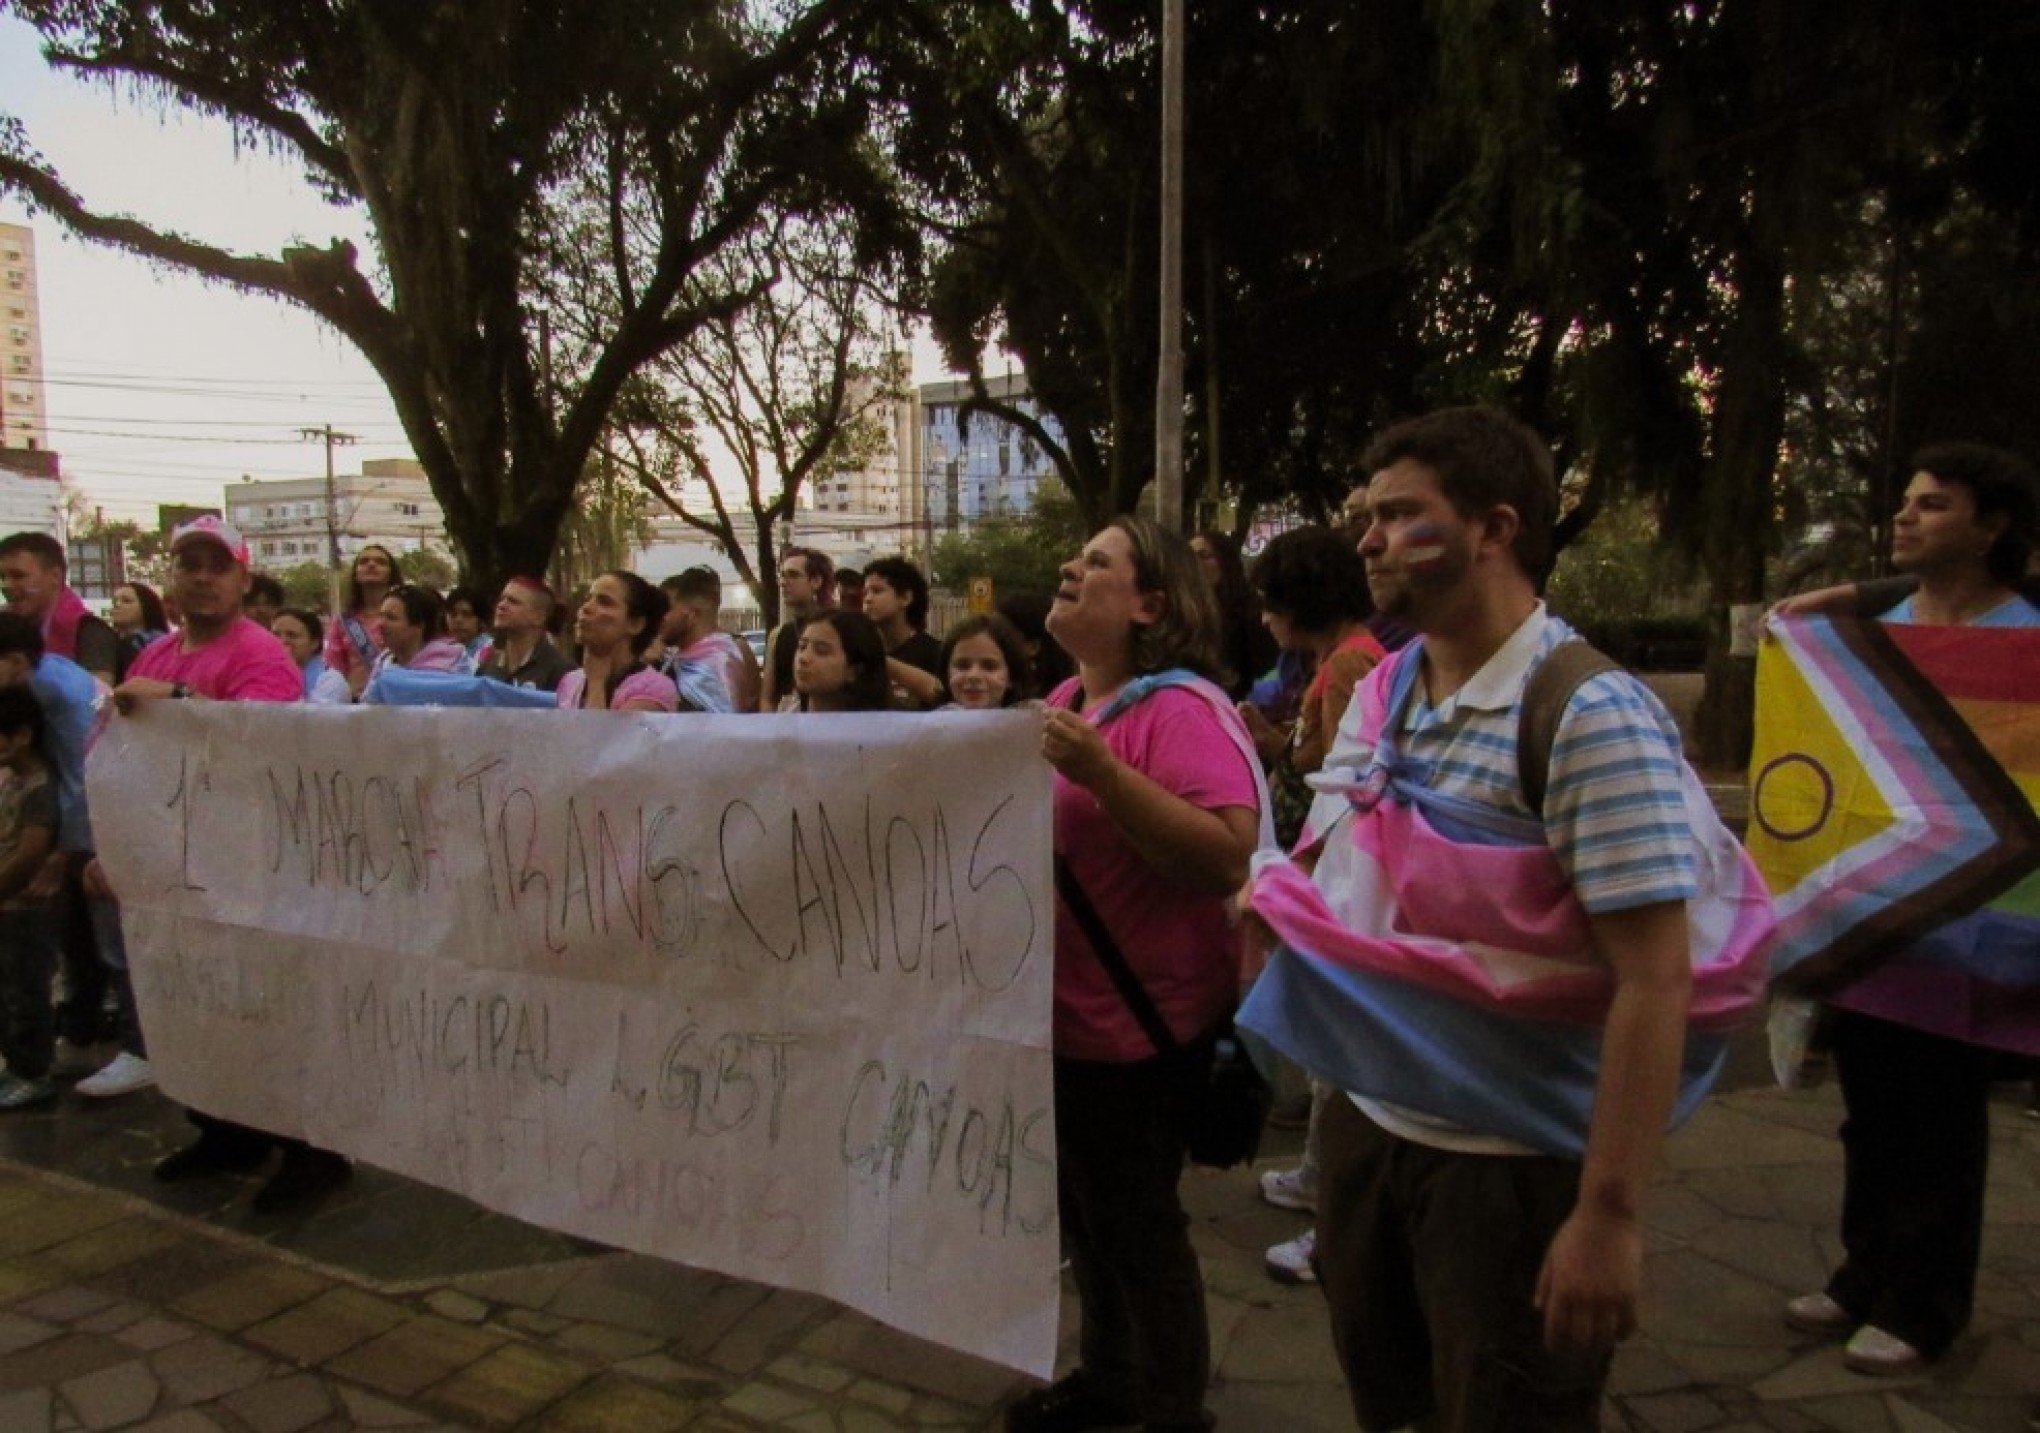 POR MAIS VISIBILIDADE: Segunda marcha trans ocorre nesta segunda-feira em Canoas